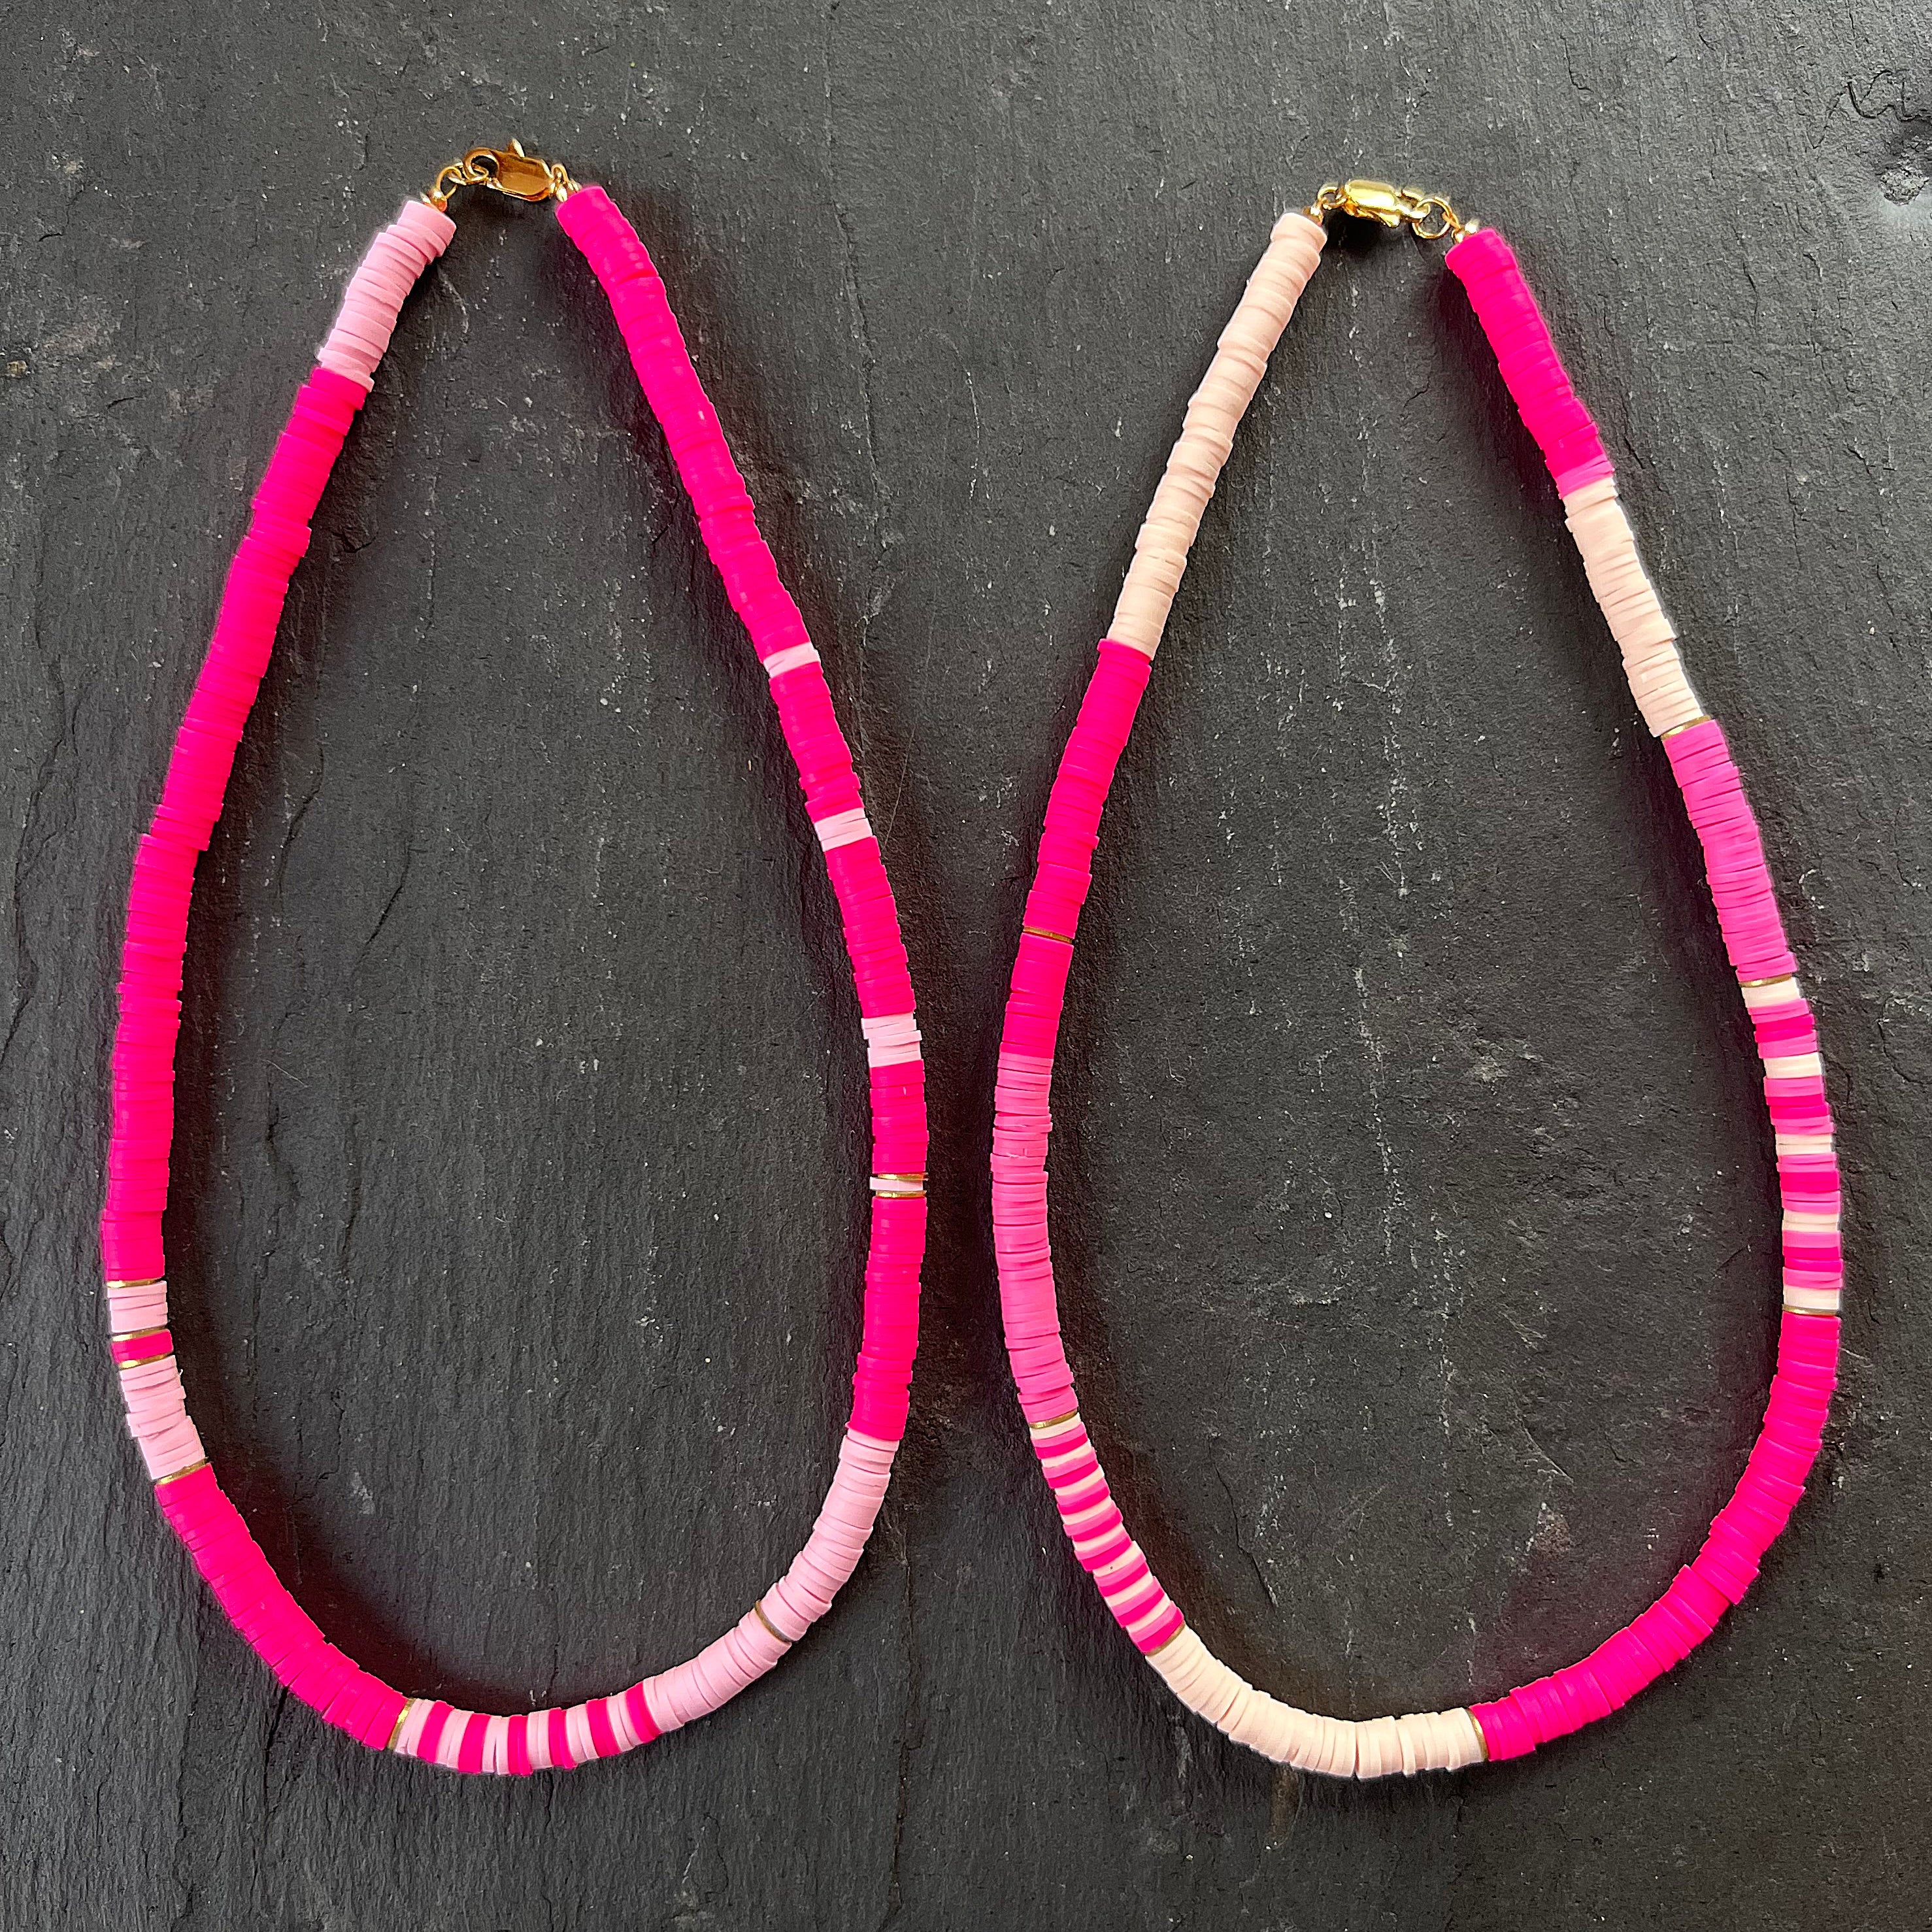 Heishi Bead Necklaces - MALIBU and MALIBU BEACH